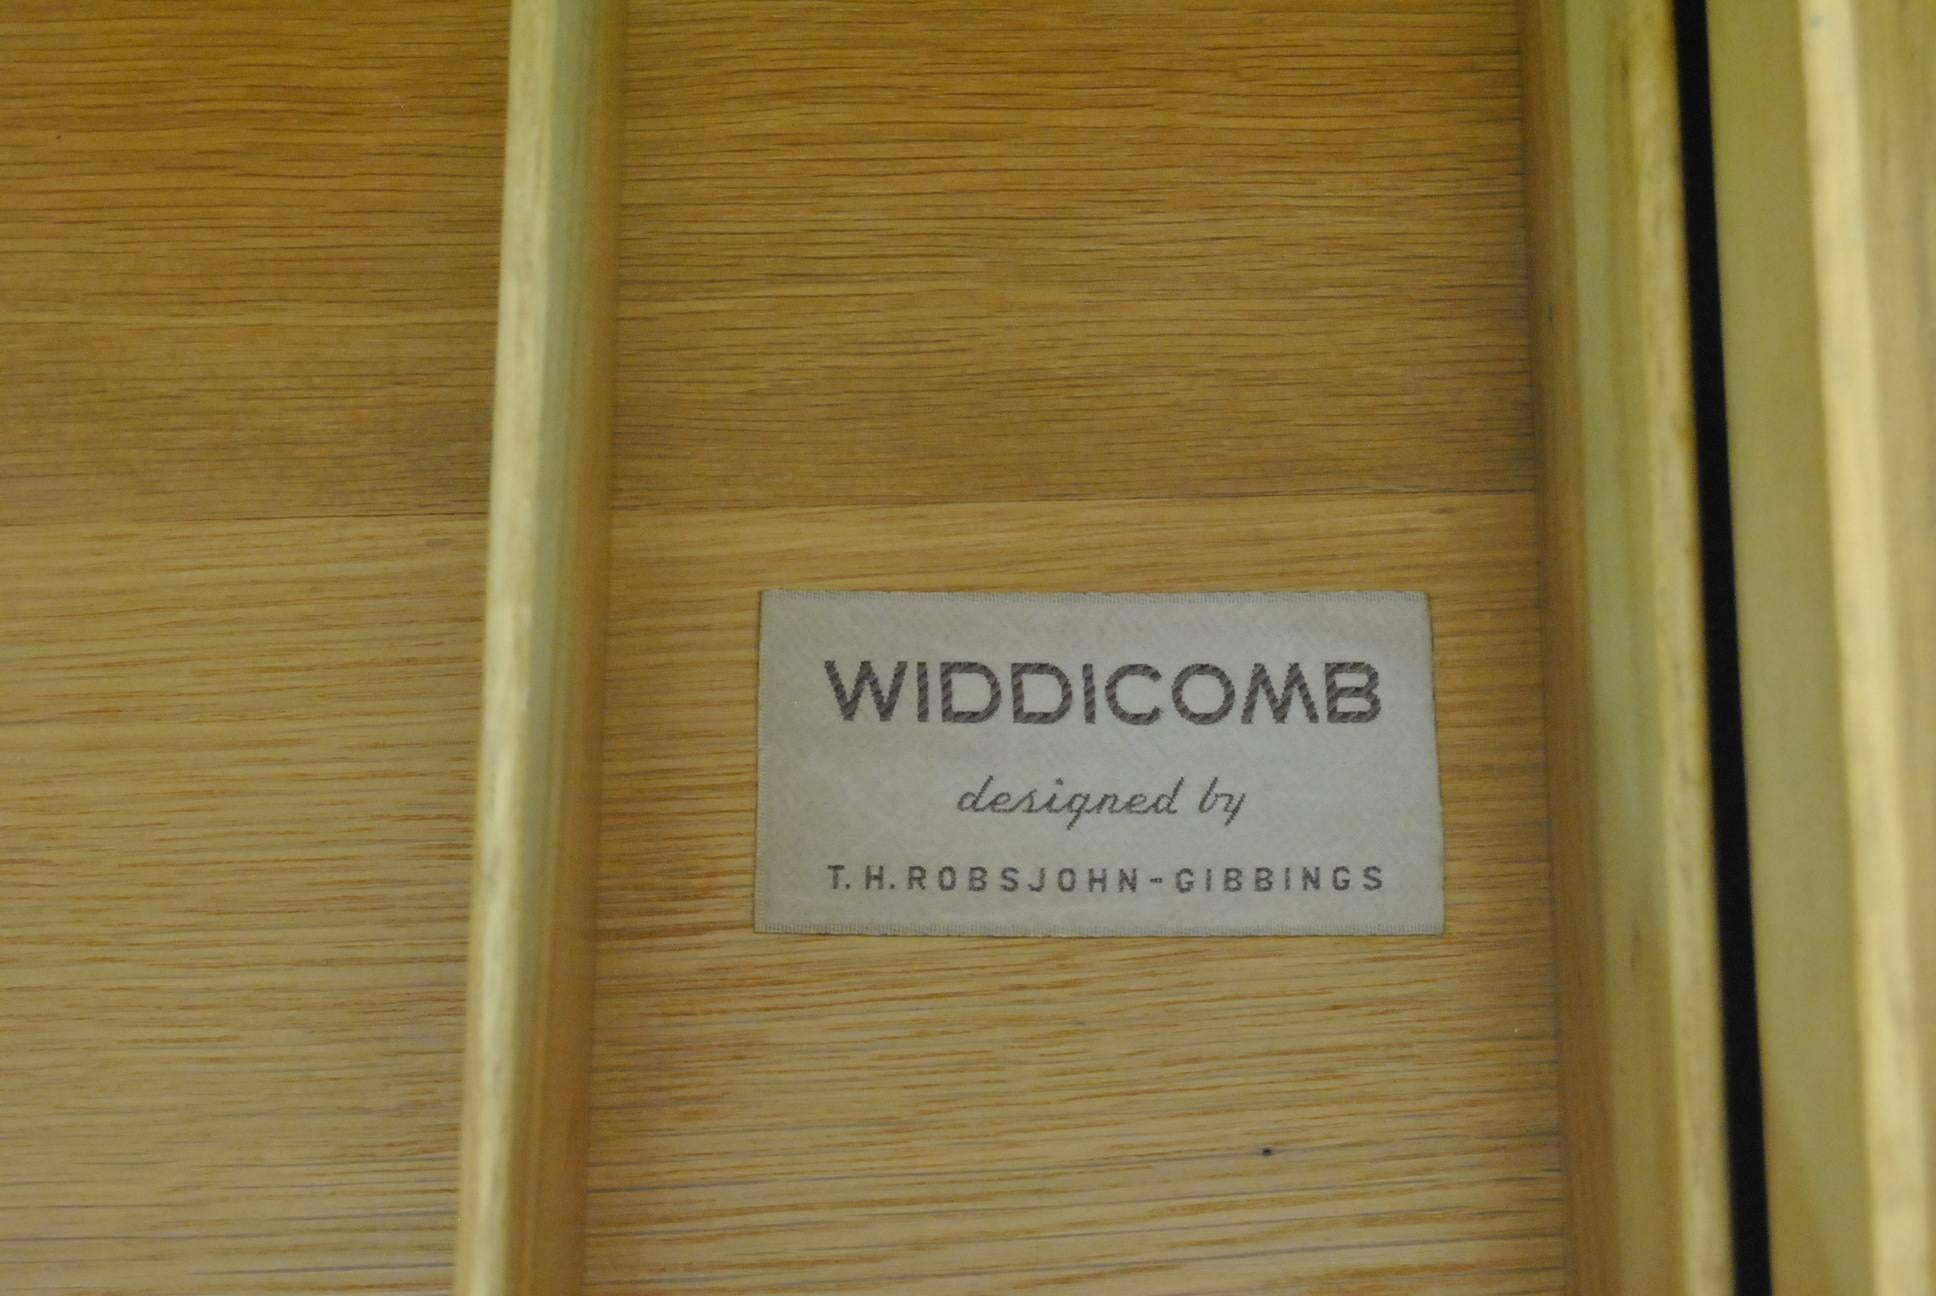 Ash Mid-Century Modern Six-Drawer Dresser by T.H. Robsjohn-Gibbings for Widdicomb